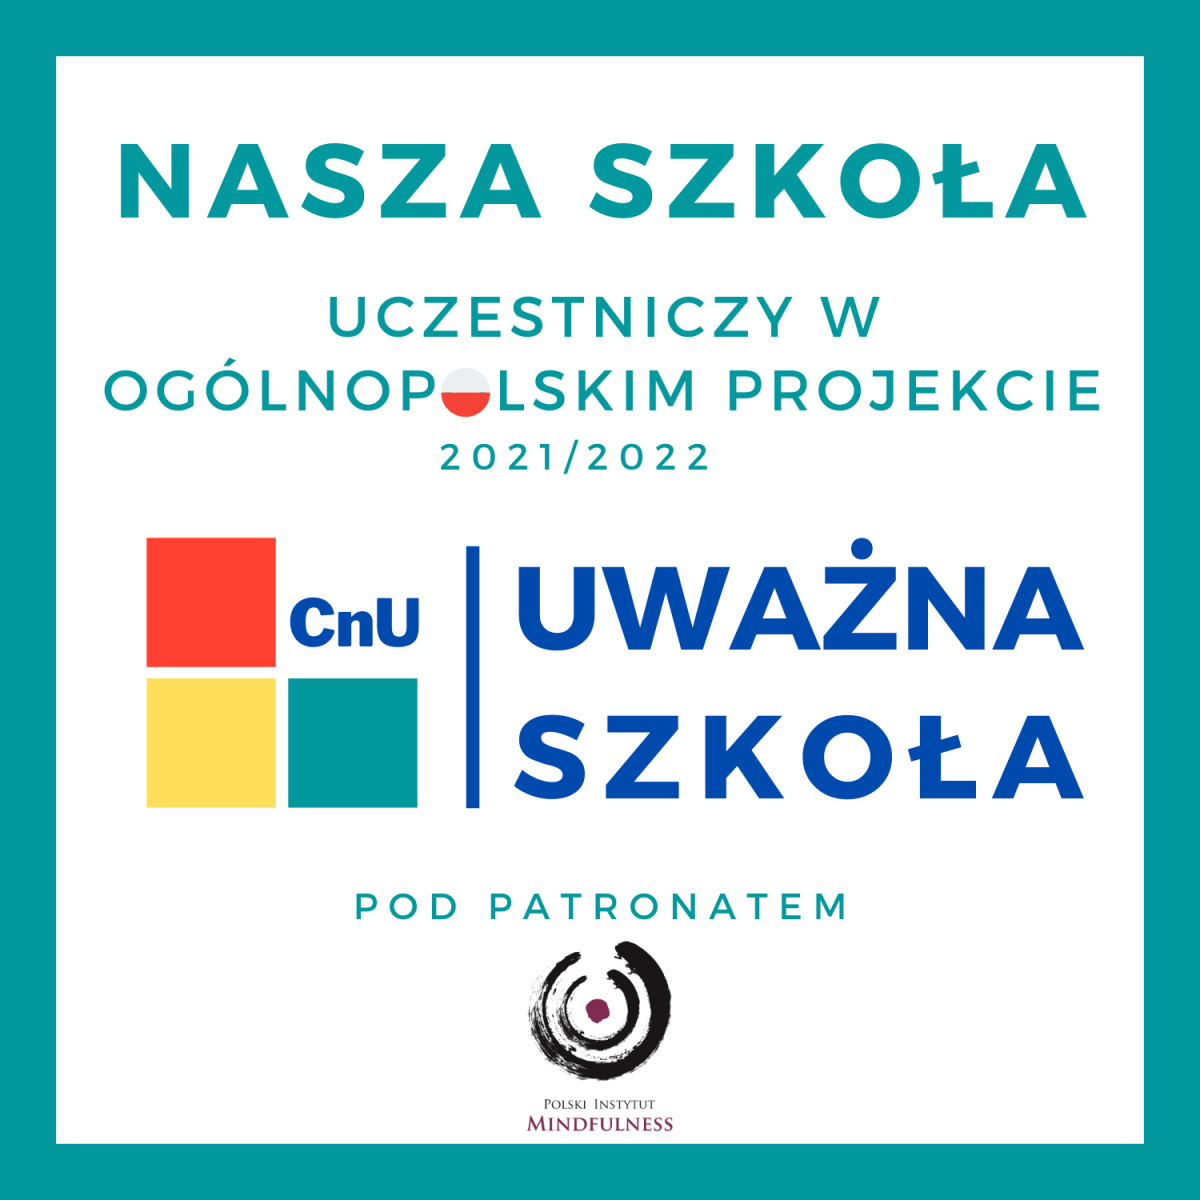 https://www.polski-instytut-mindfulness.pl/uwazna-szkola/